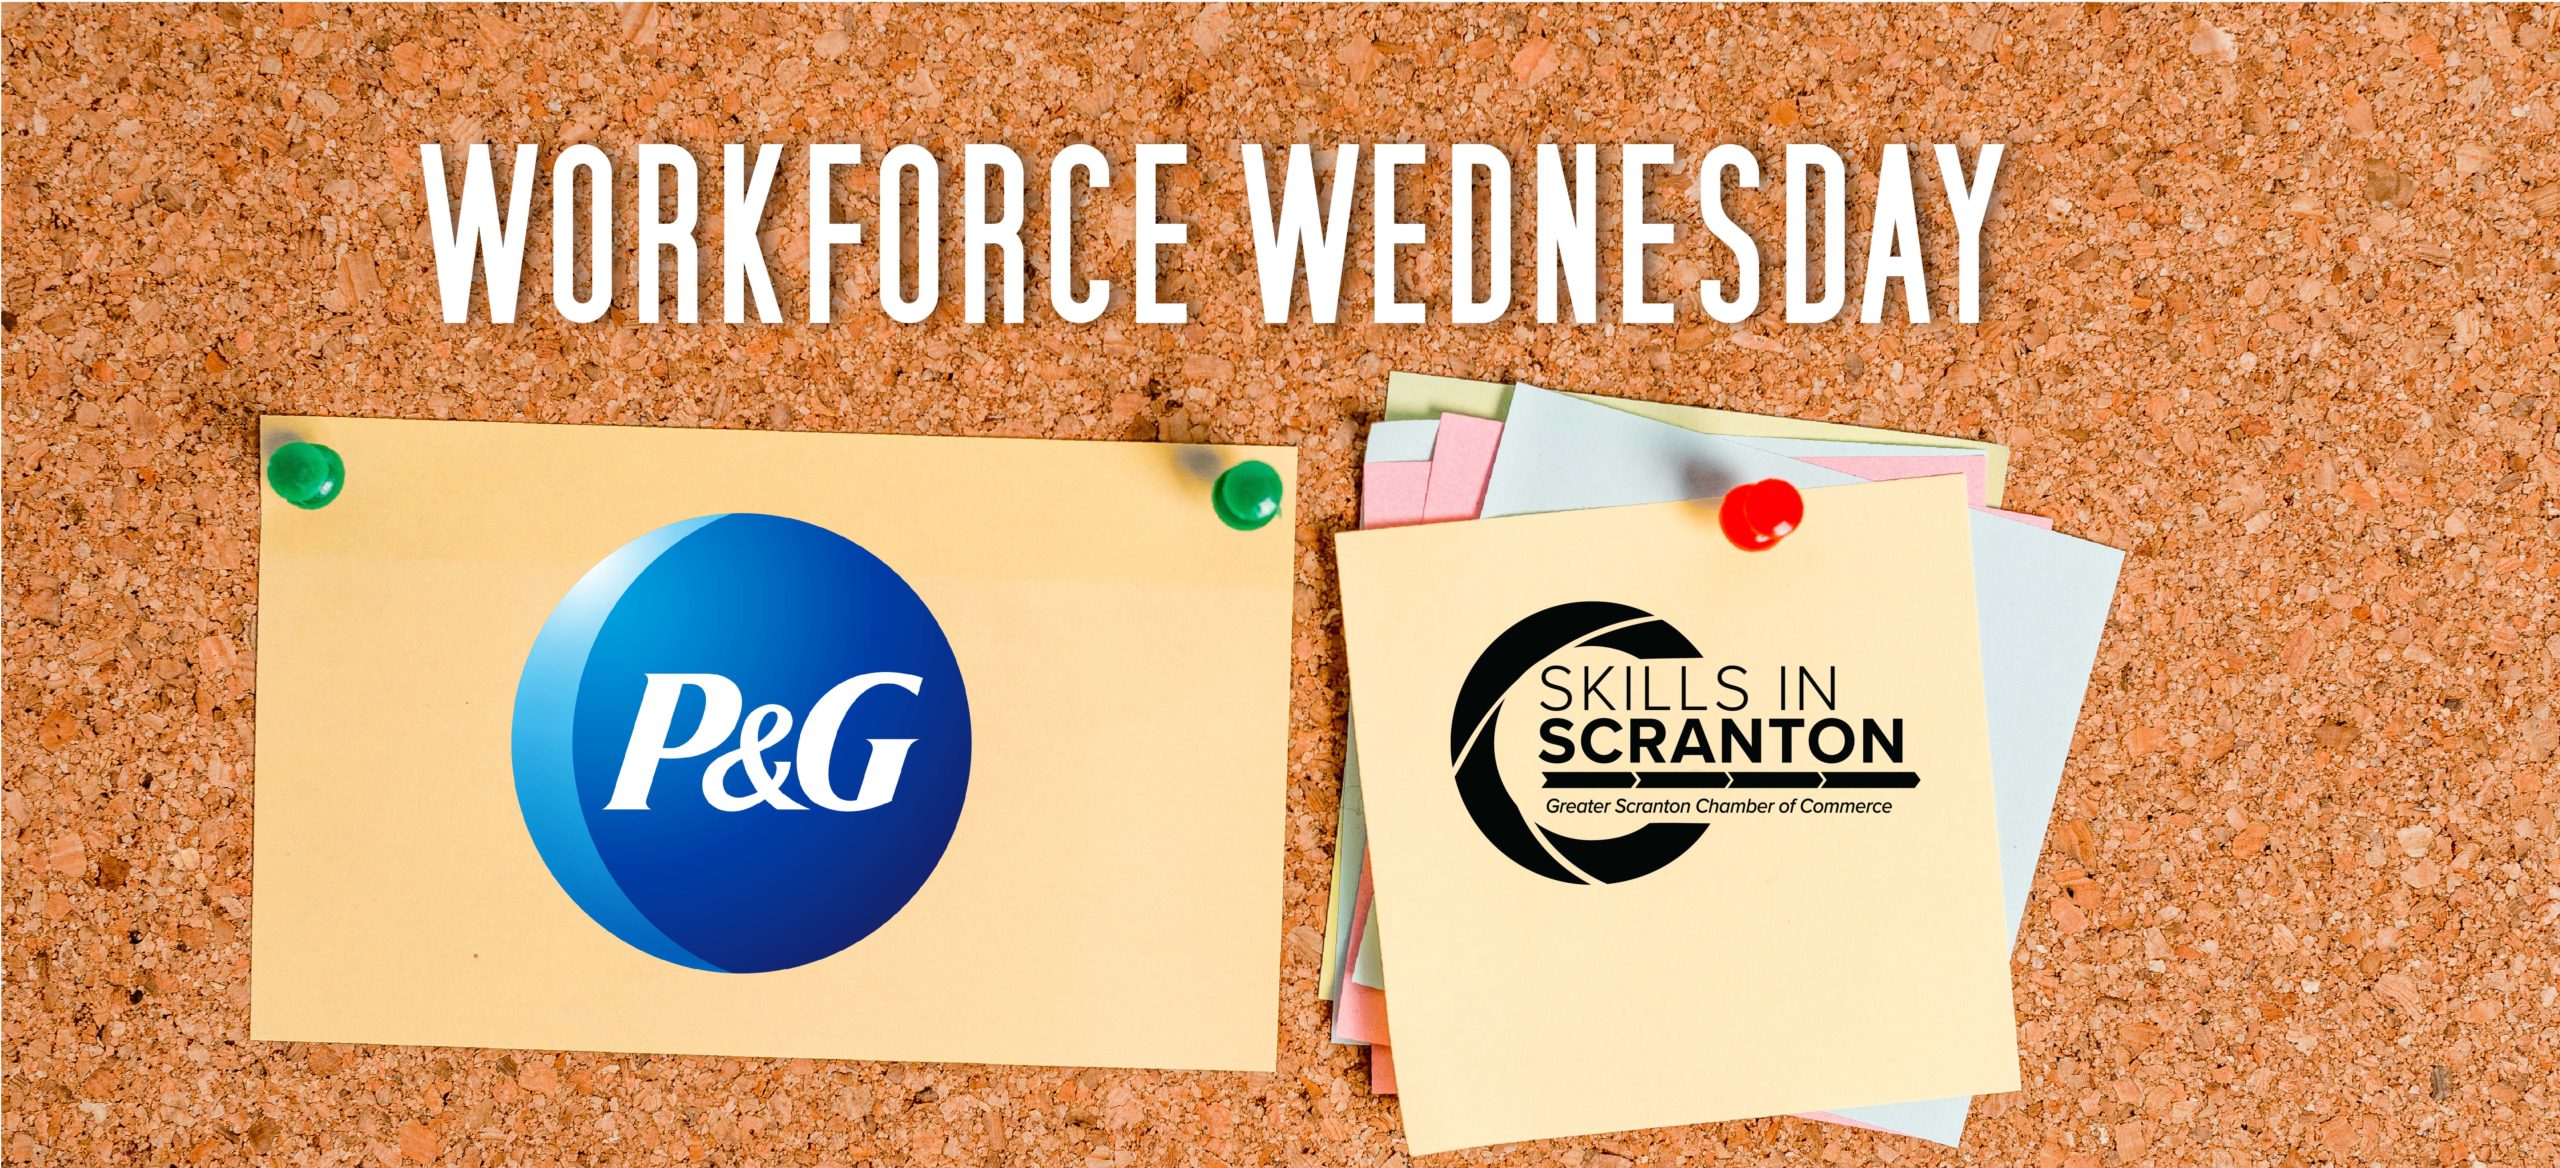 Workforce Wednesday: P&G